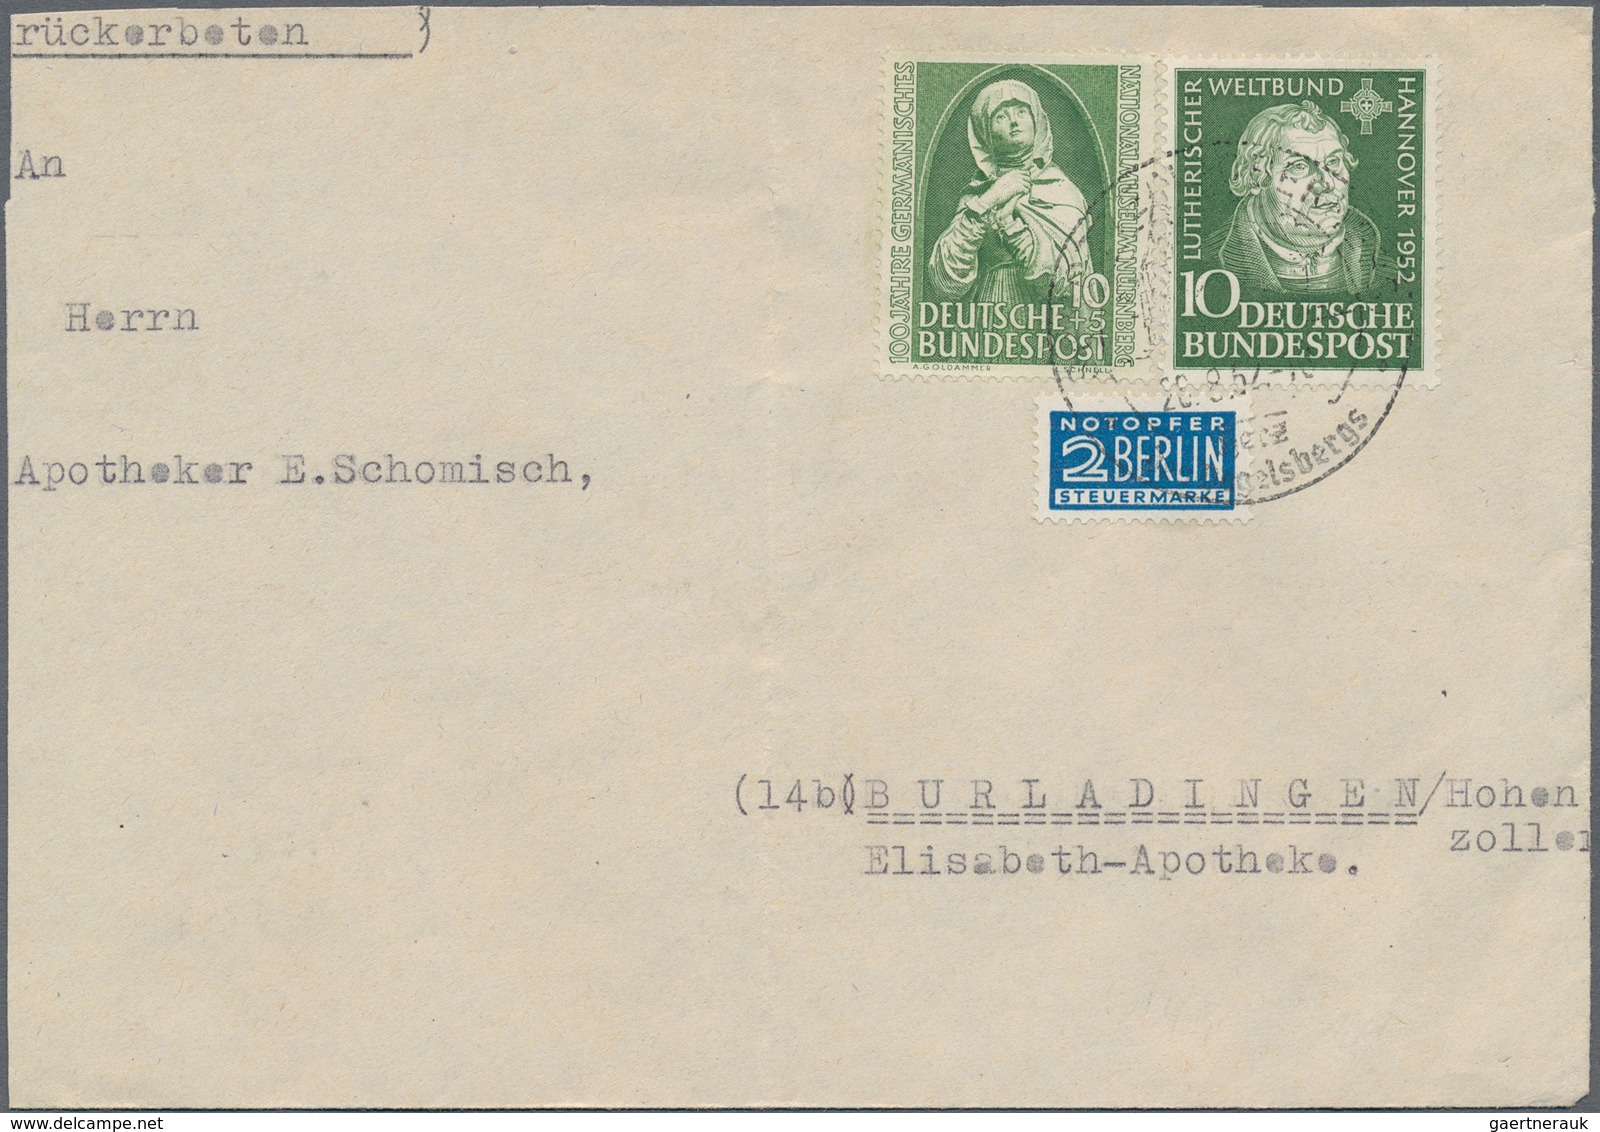 Bundesrepublik Deutschland: 1949/1954, acht Einschreibebriefe mit besseren Frankaturen, dabei drei W